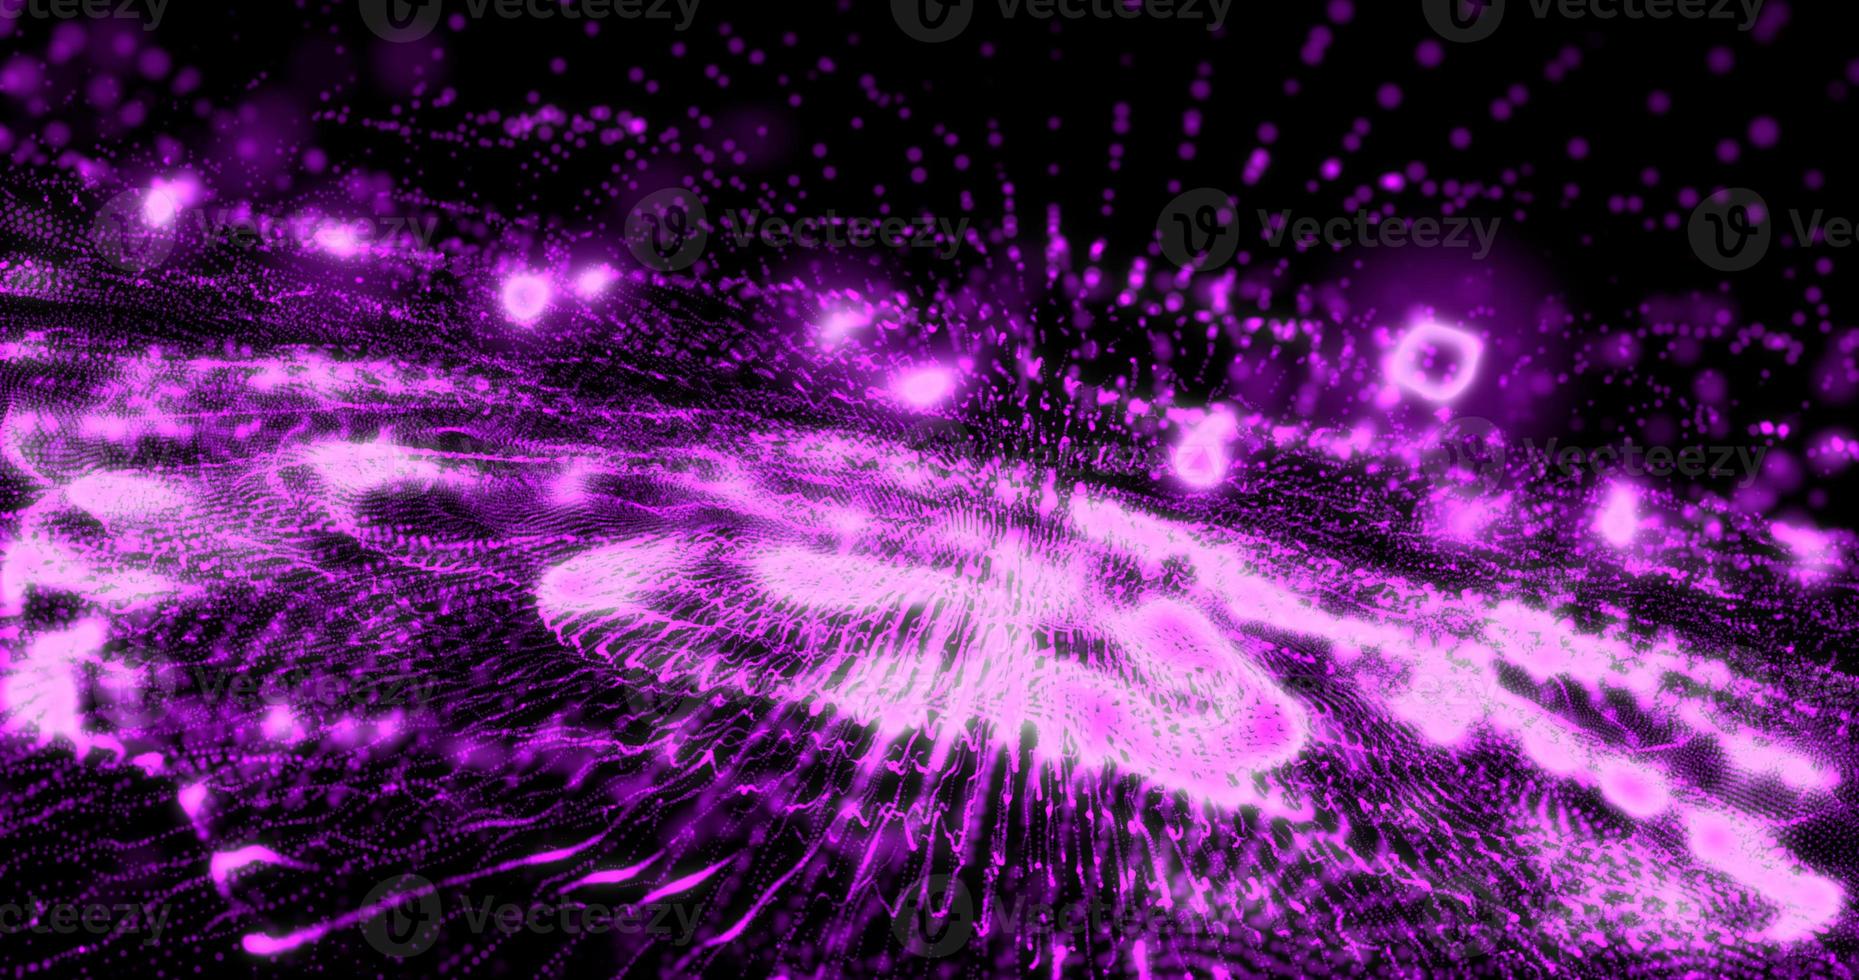 abstrakter hintergrund mit lila beweglichen fliegenden streifen, linien, wellen digitaler high-tech-rauchpartikel mit unschärfeeffekt und bokeh foto